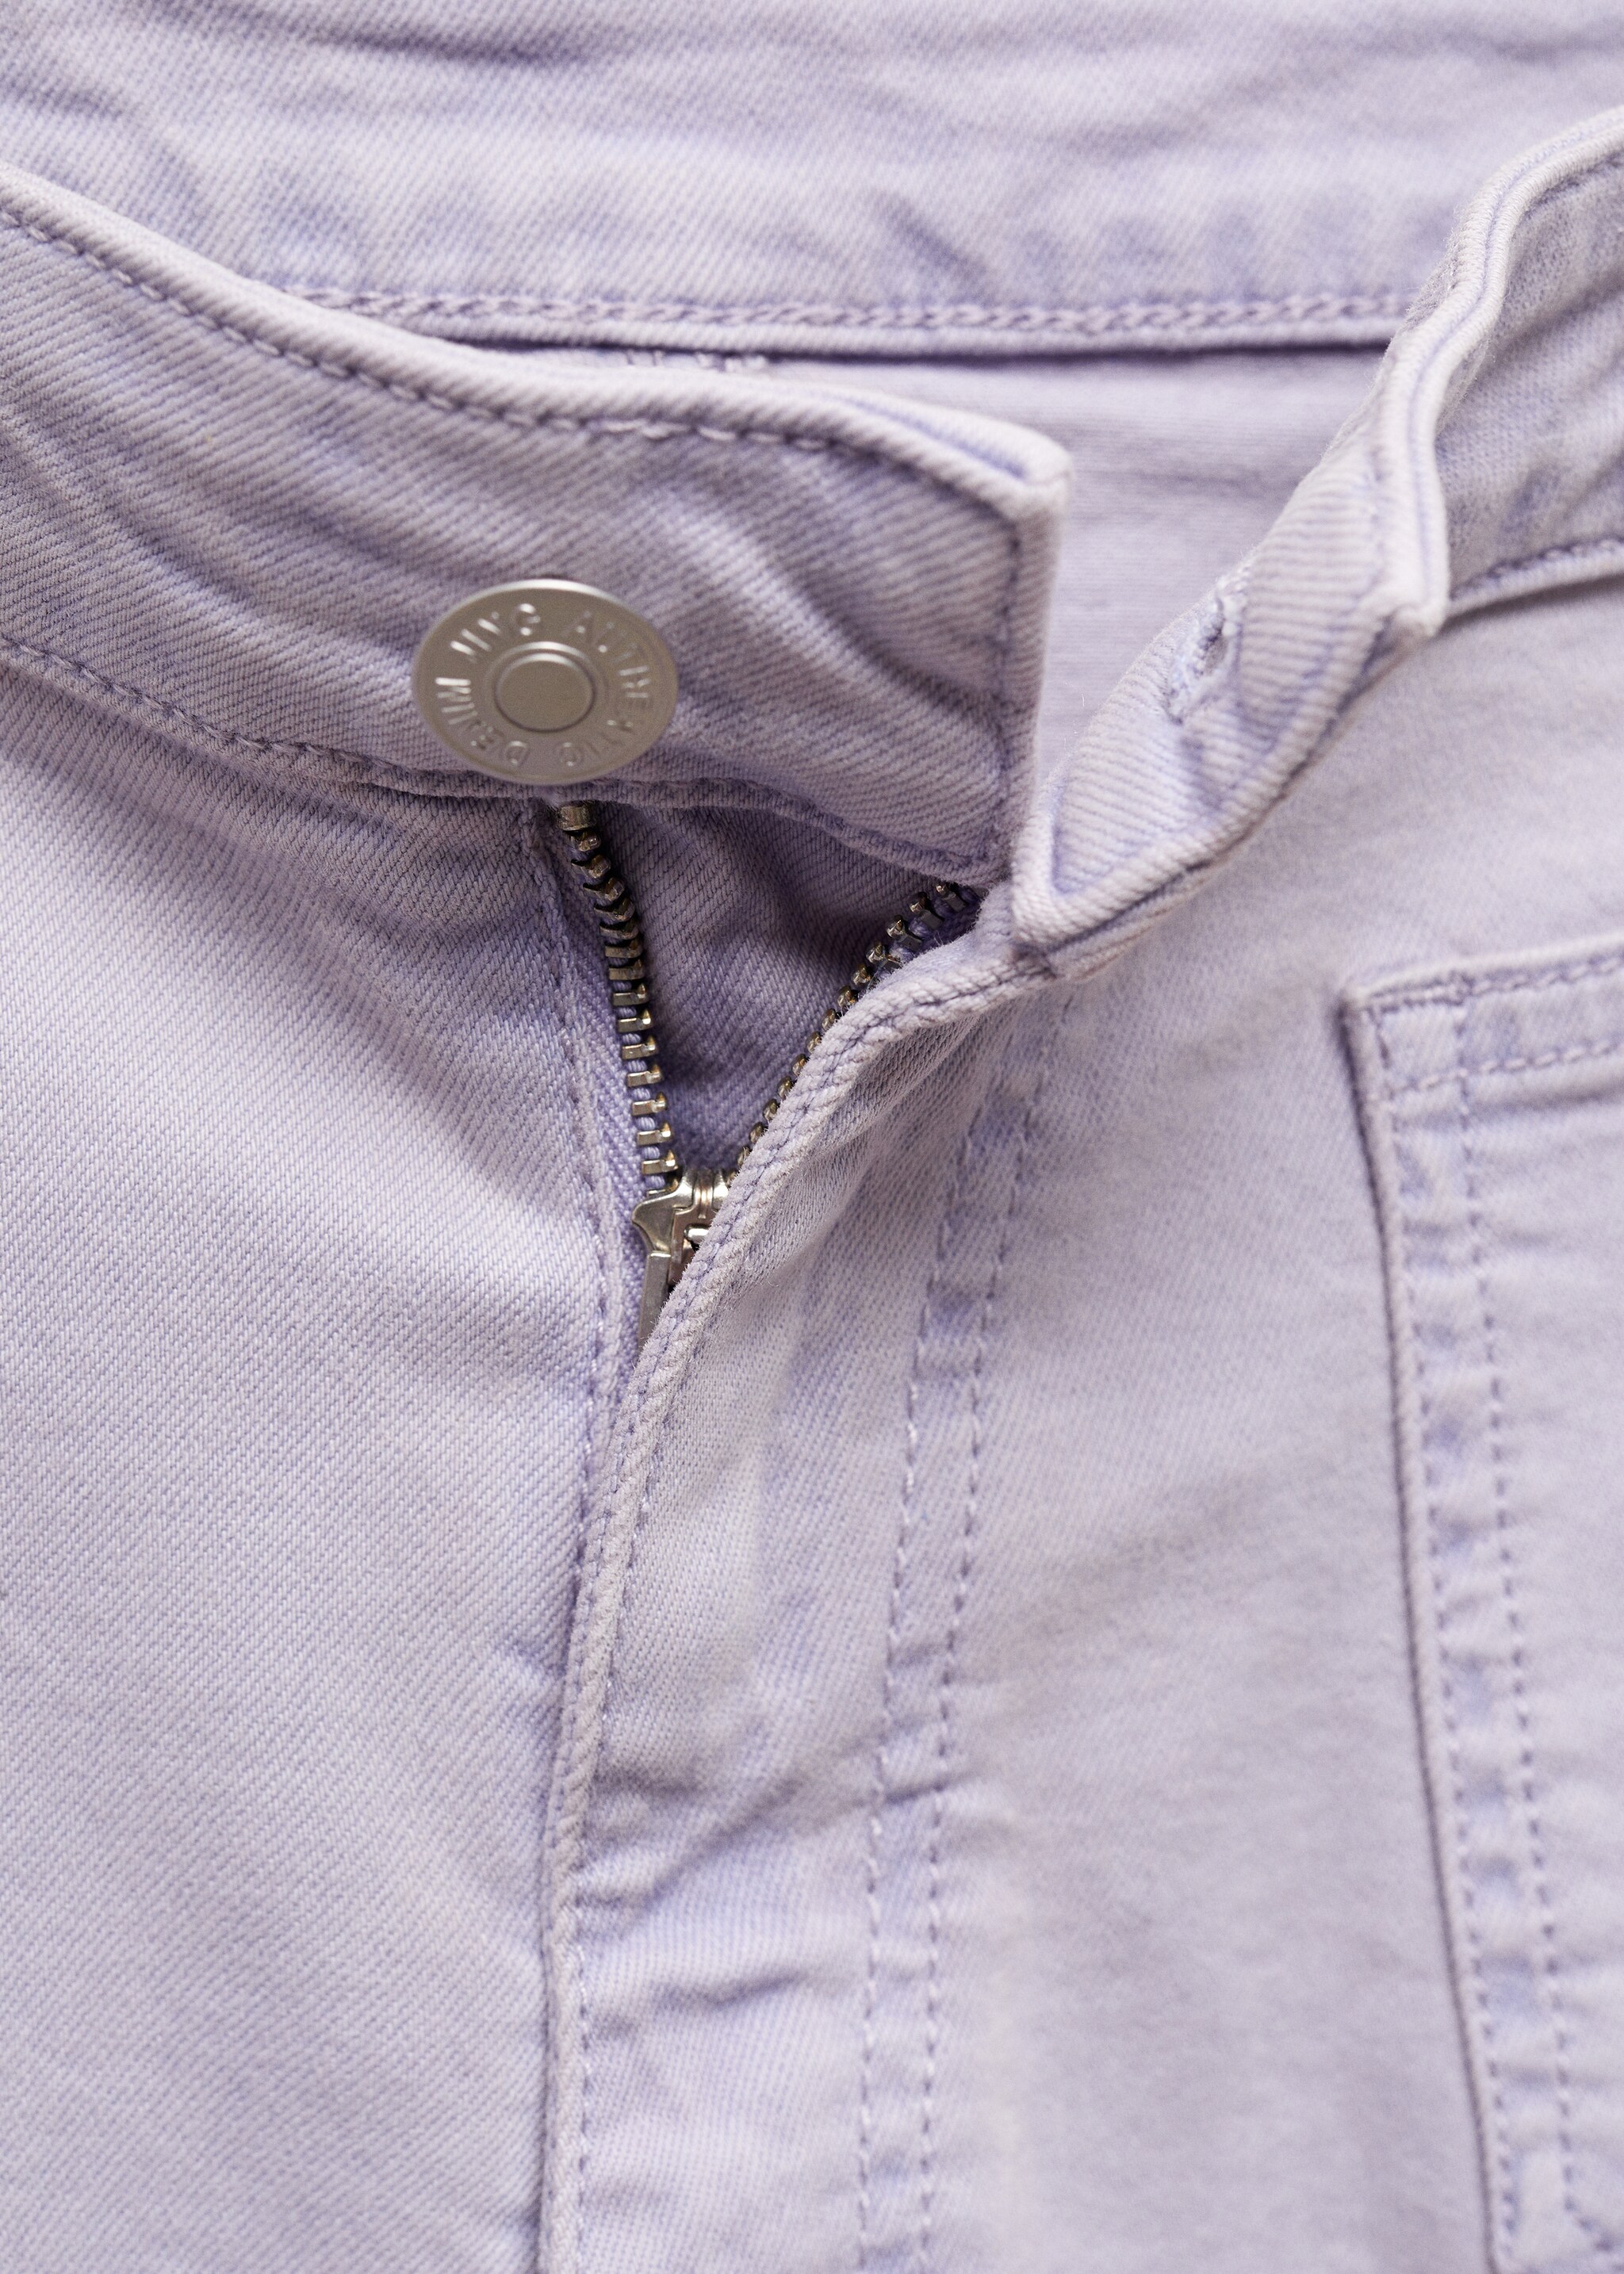 Shorts algodón bolsillos - Detalle del artículo 8